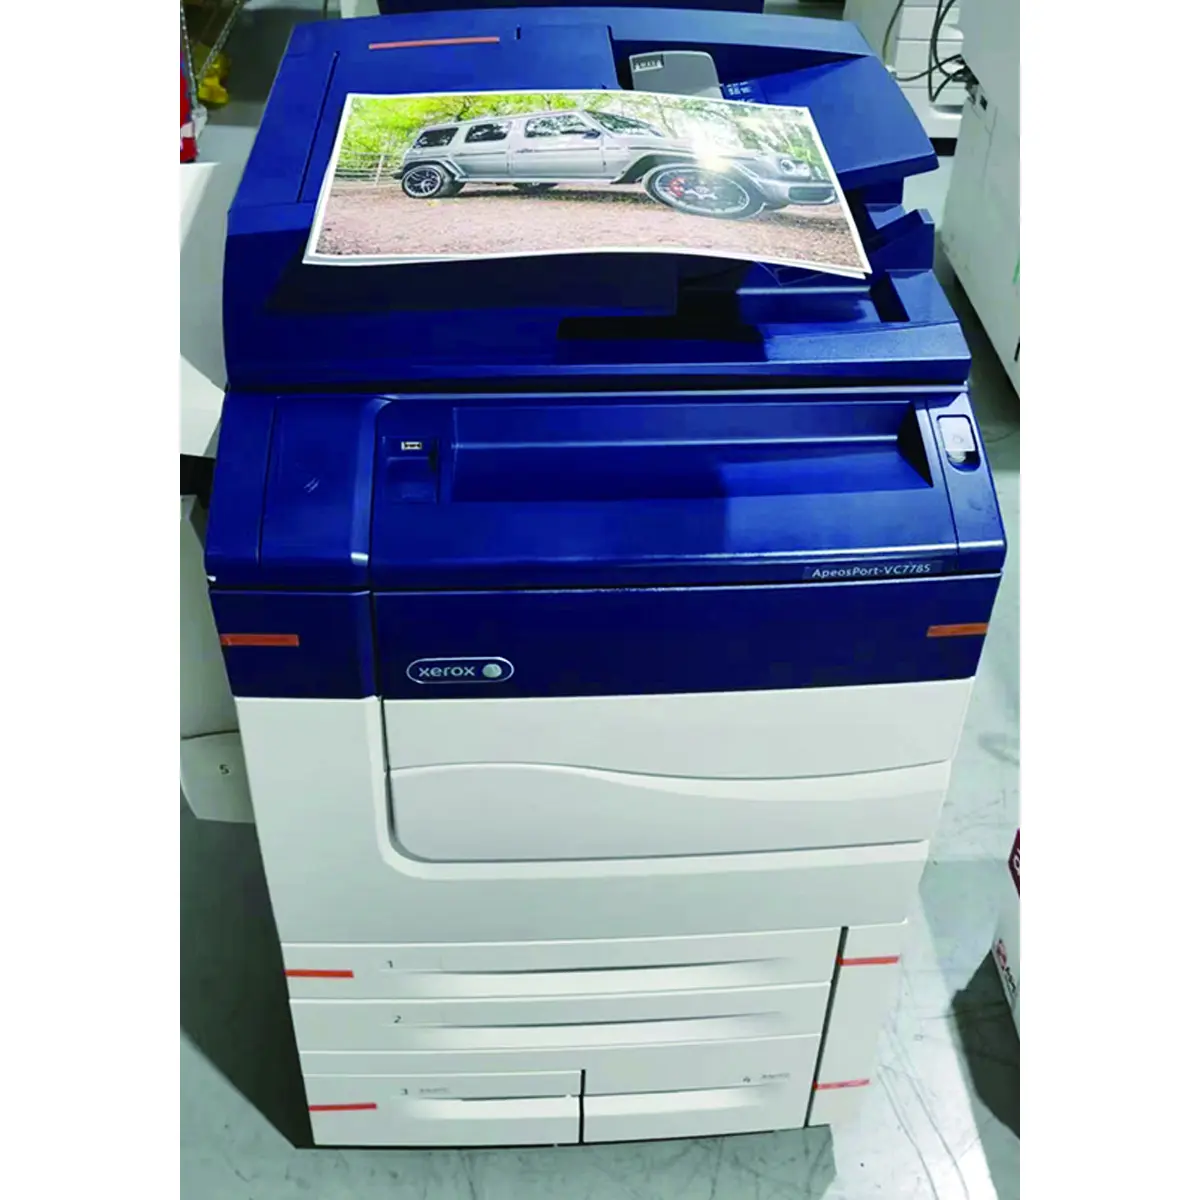 Yenilenmiş fotokopi yüksek hızlı kullanılan yazıcılar Xerox VC7785 için Min A3 yenilenmiş renkli fotokopi başına 75 sayfa